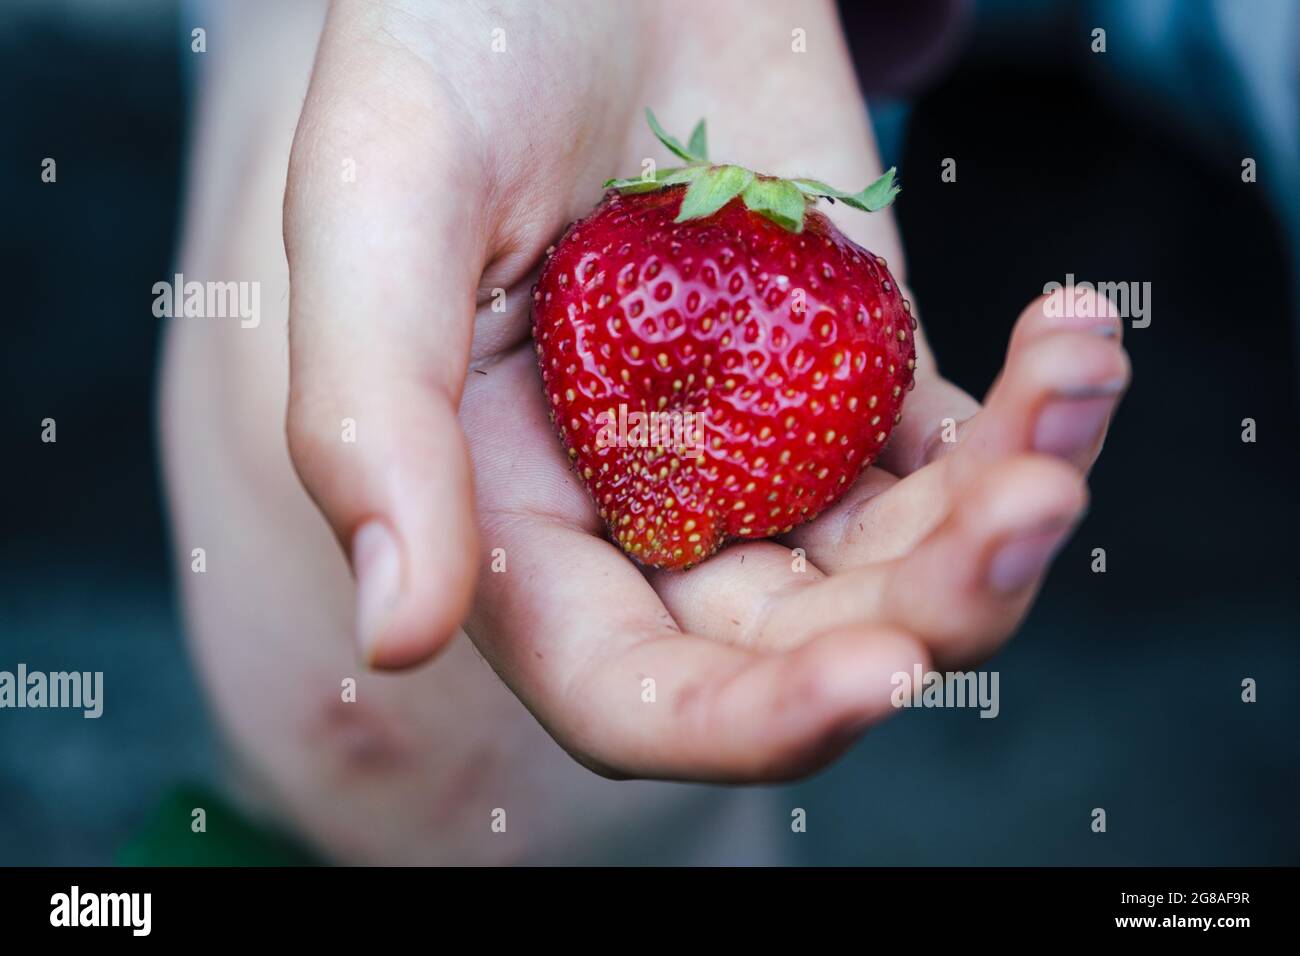 Ein Kind, das eine hausgemachte Erdbeere hält Stockfoto